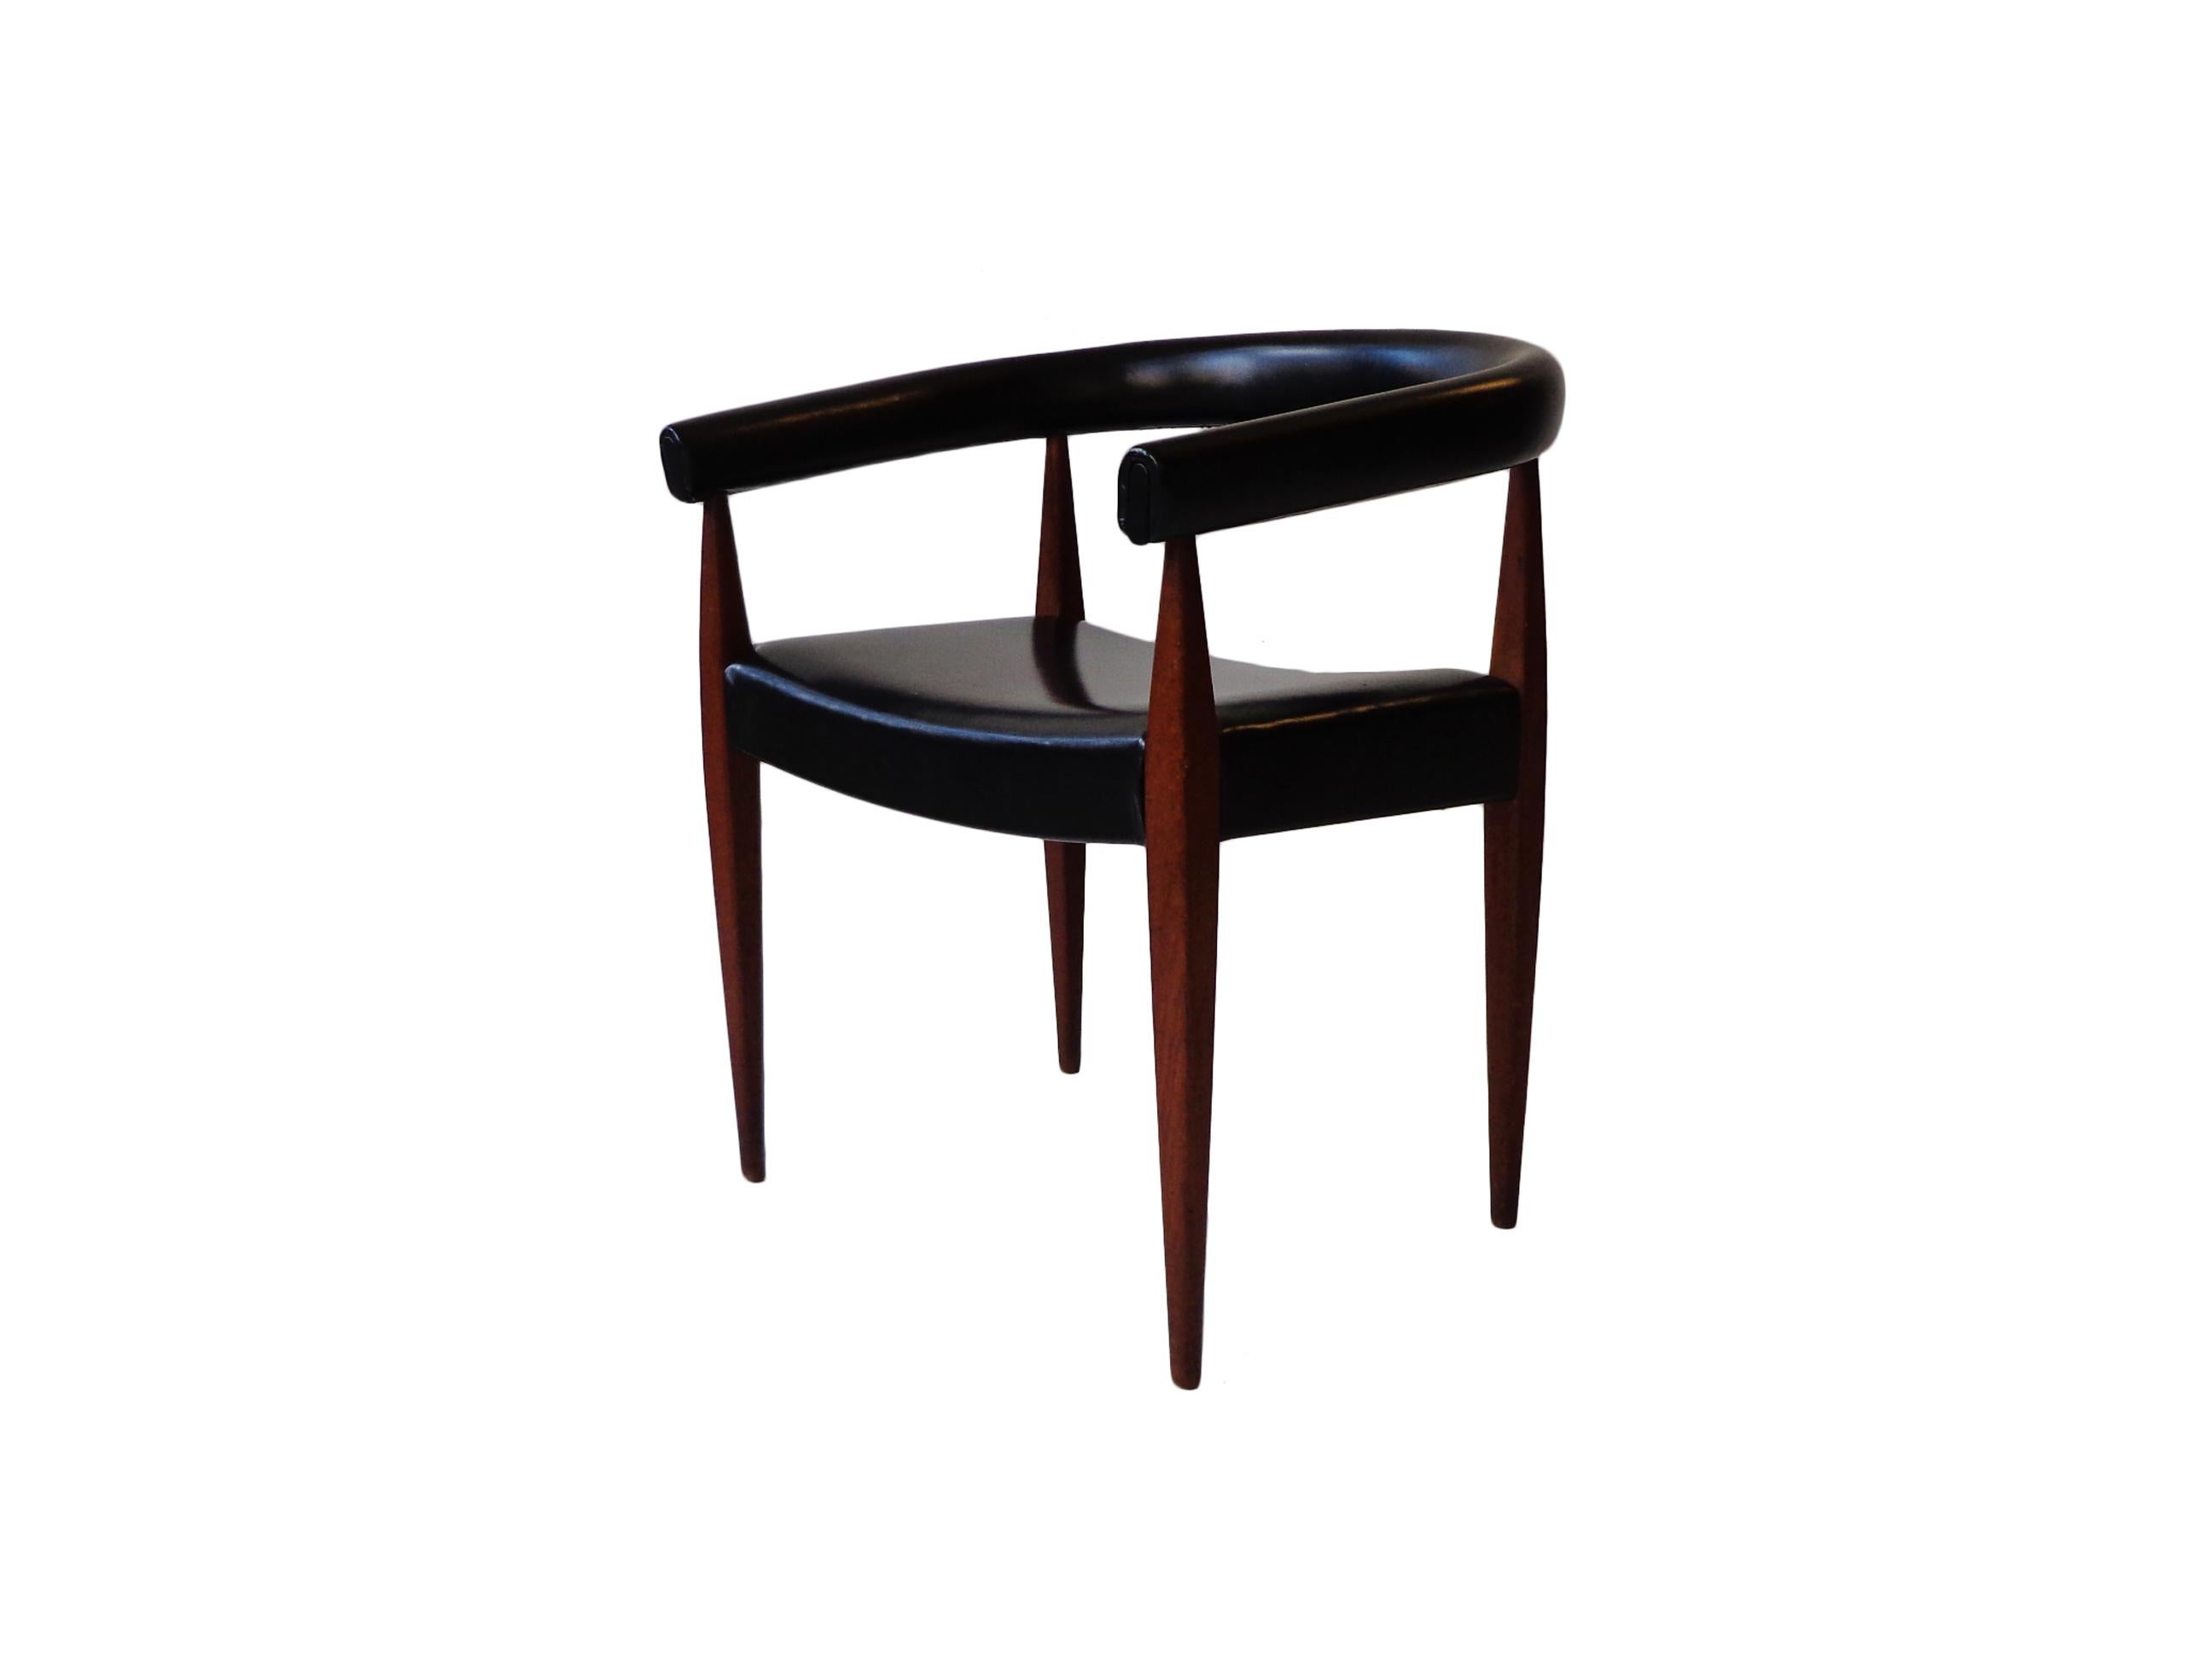 Seltener Sessel oder Schreibtischstuhl, Modell 114, entworfen von Nanna Ditzel. 

Toller Vintage-Zustand und das Teakholz hat eine wirklich schöne Maserung. Skandinavisches modernes Design von einem der besten Designer Dänemarks.

Nanna Ditzel